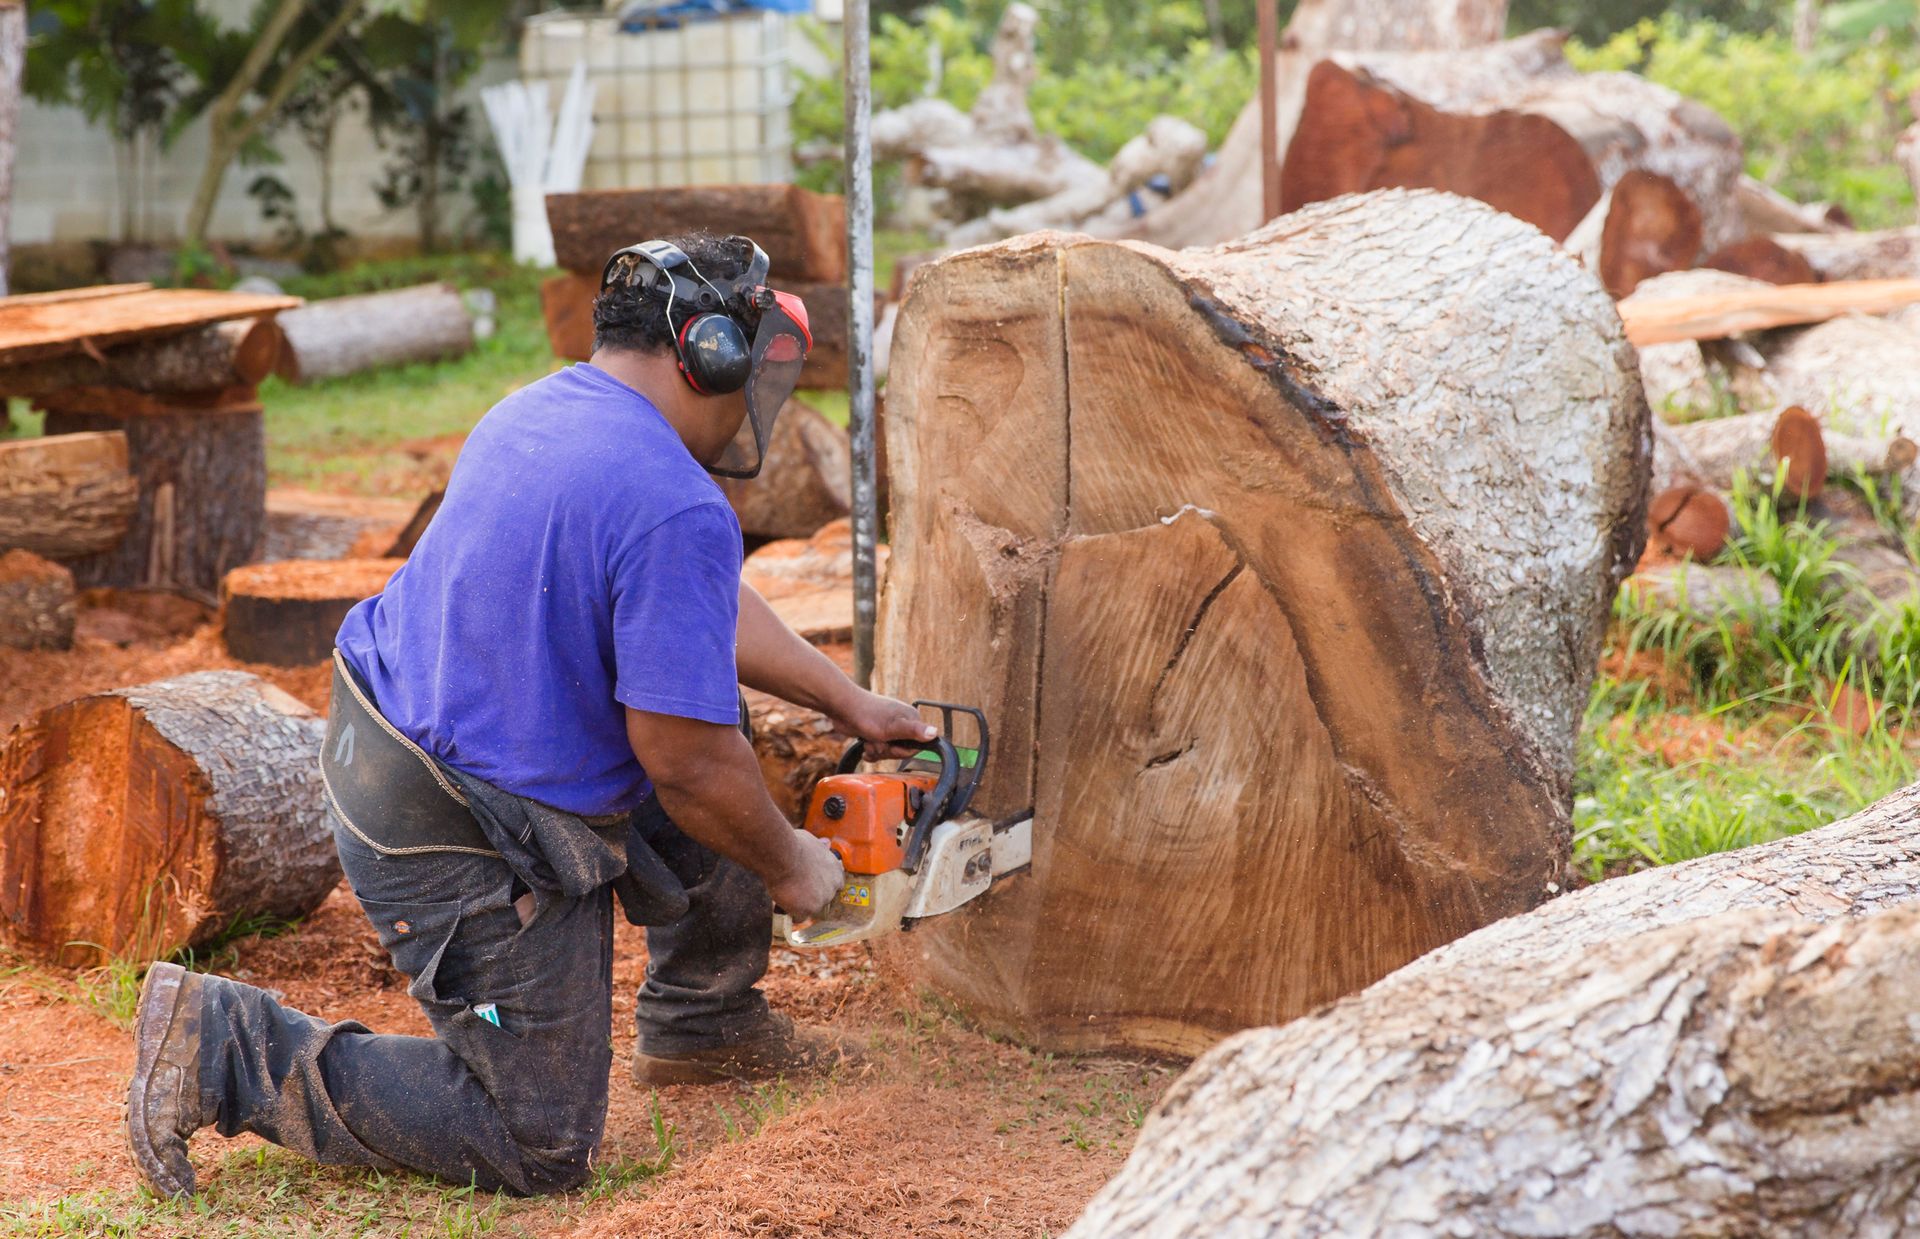 芬甲用大型木材建造kalia，這使得他的木雕技藝更為精進。kalia是東加特有獨木舟。